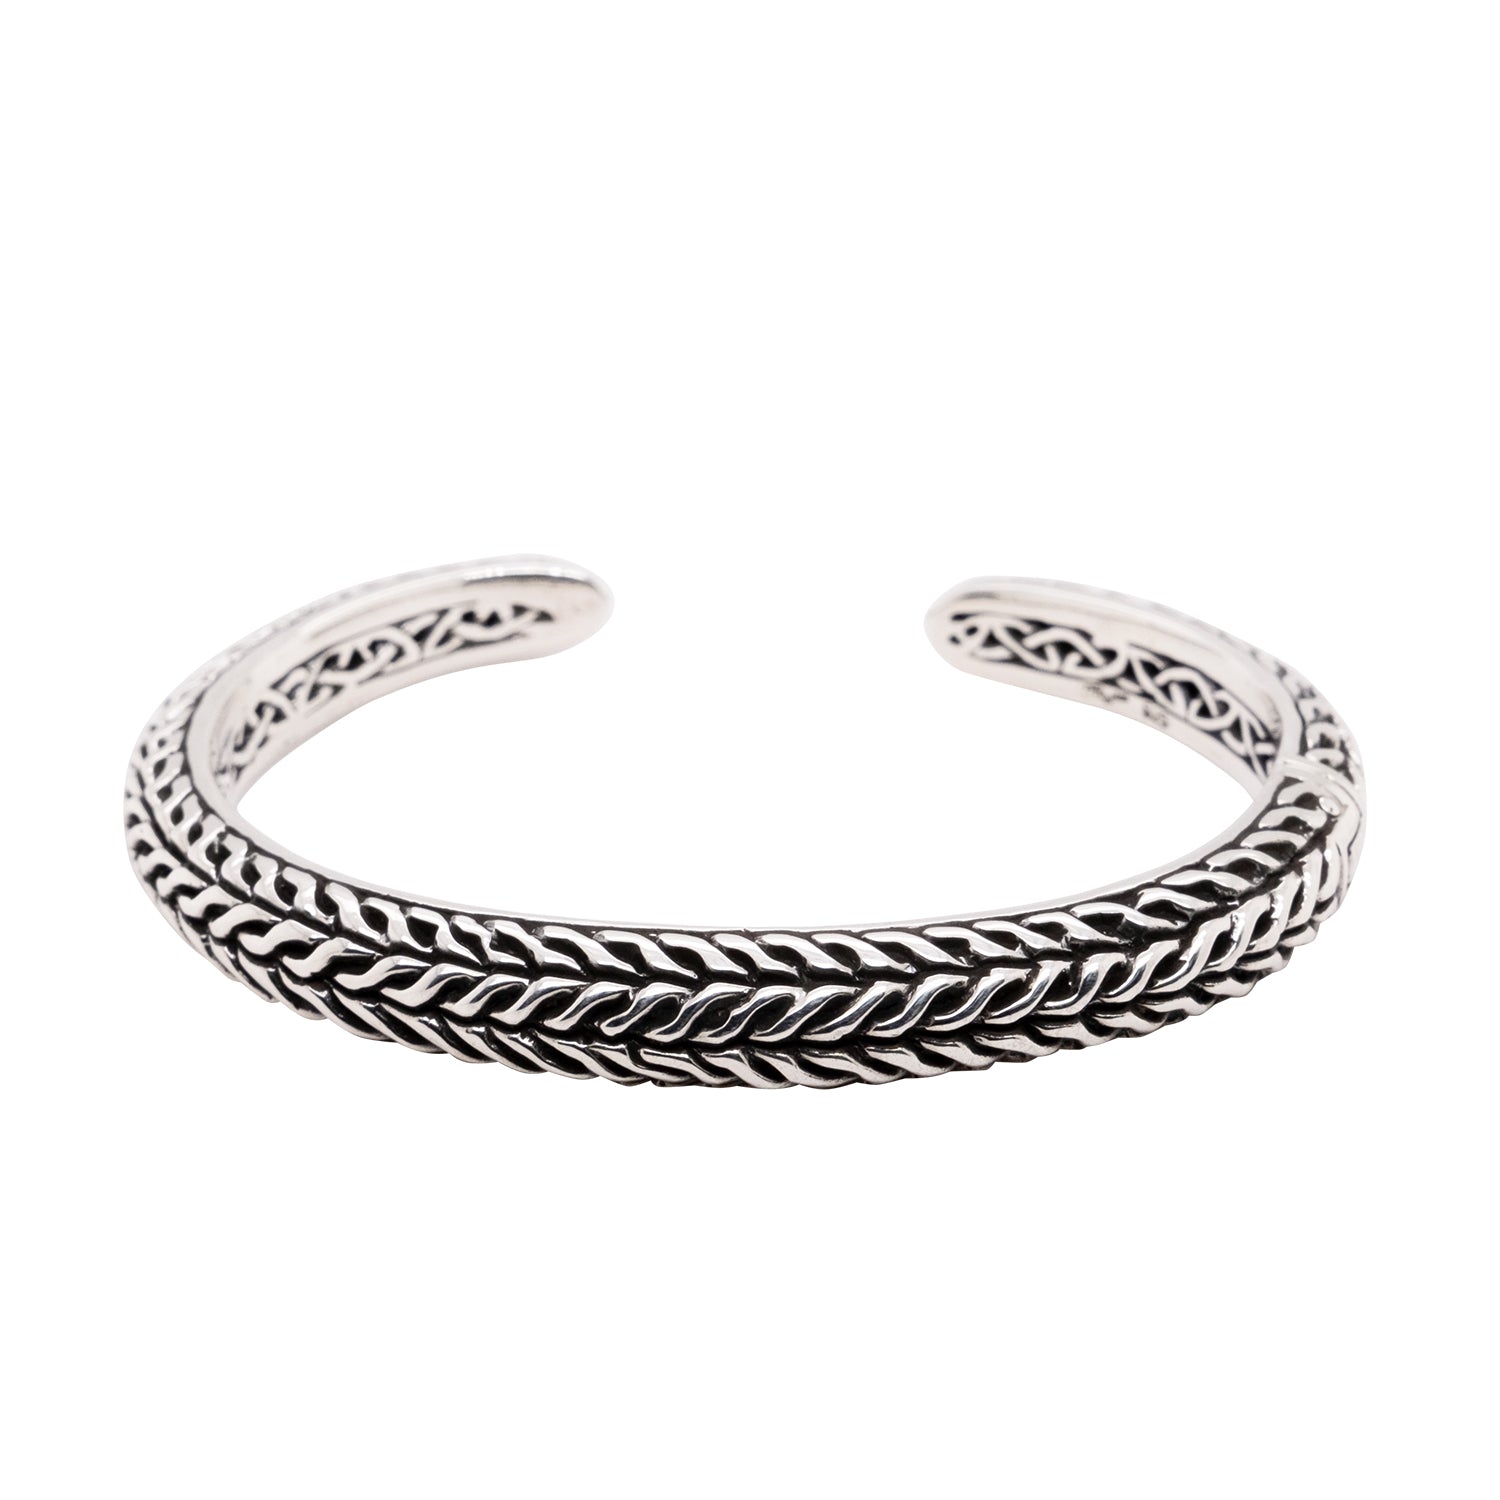 Woven Silver Cuff Bracelet | Sterling Silver Weave Bracelet